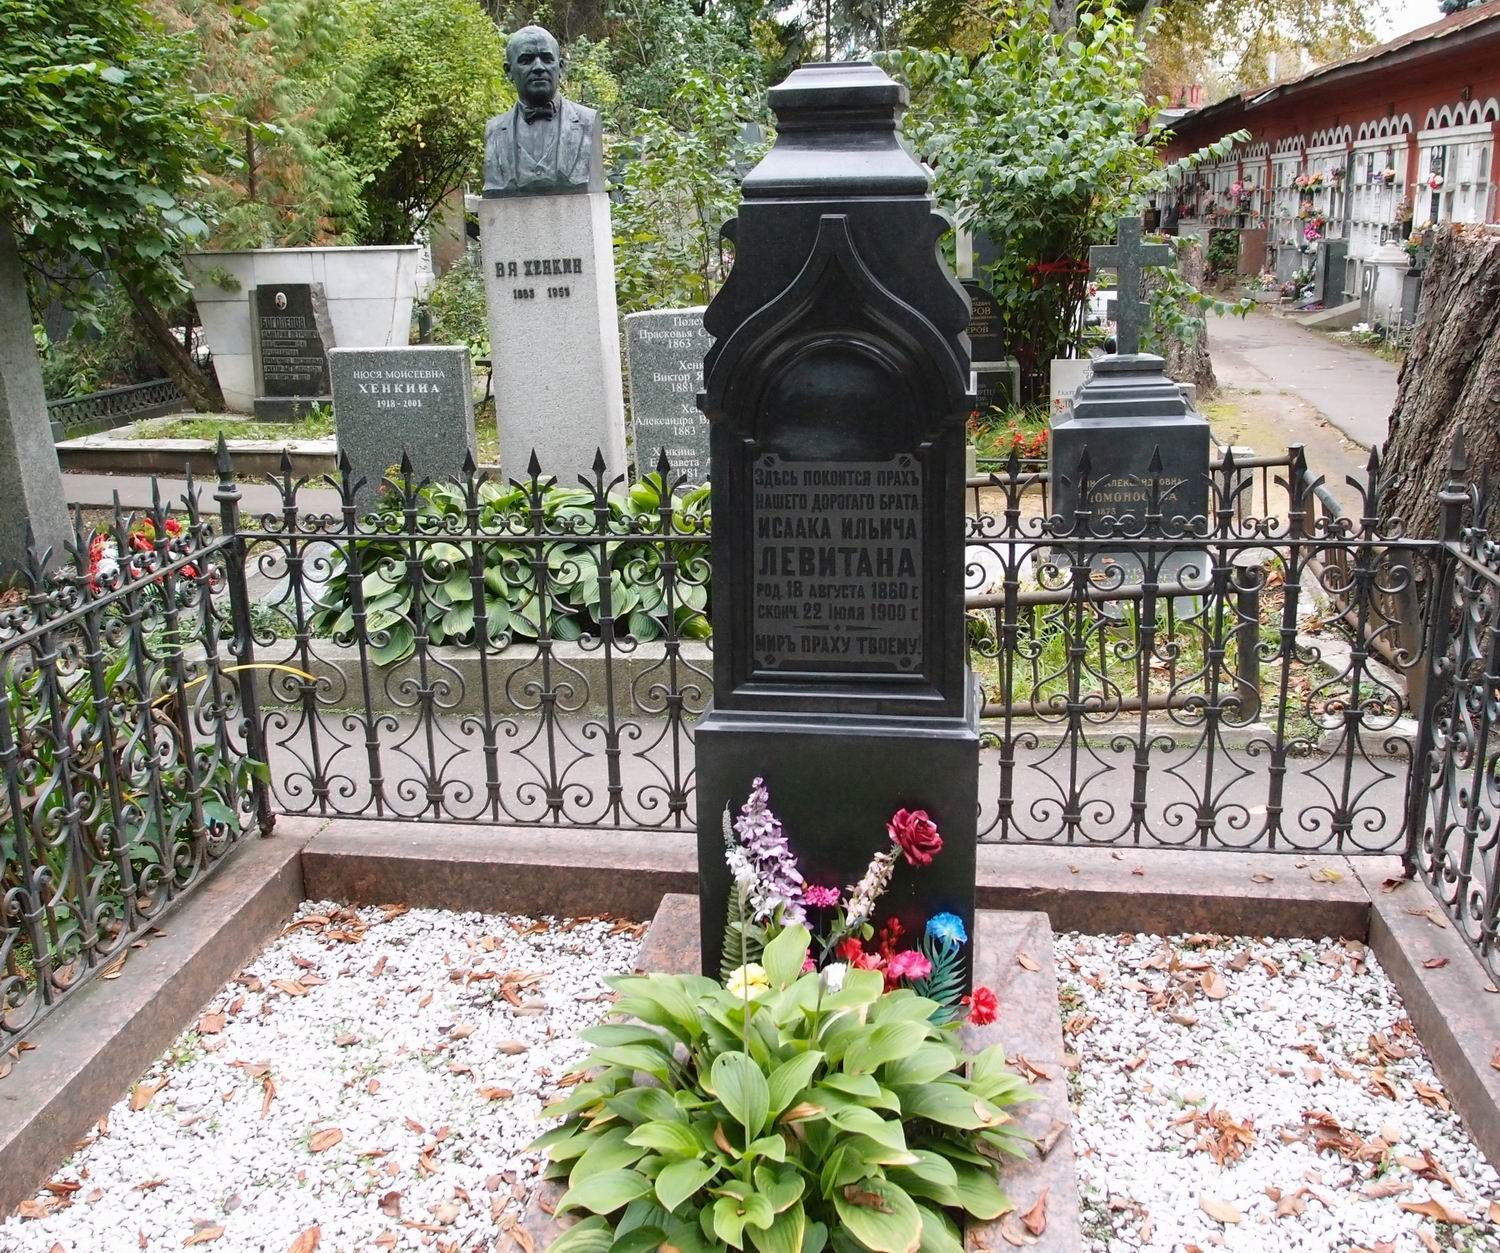 Памятник на могиле Левитана И.И. (1860-1900), на Новодевичьем кладбище (2-23-20). Нажмите левую кнопку мыши, чтобы увидеть вид памятника сзади.